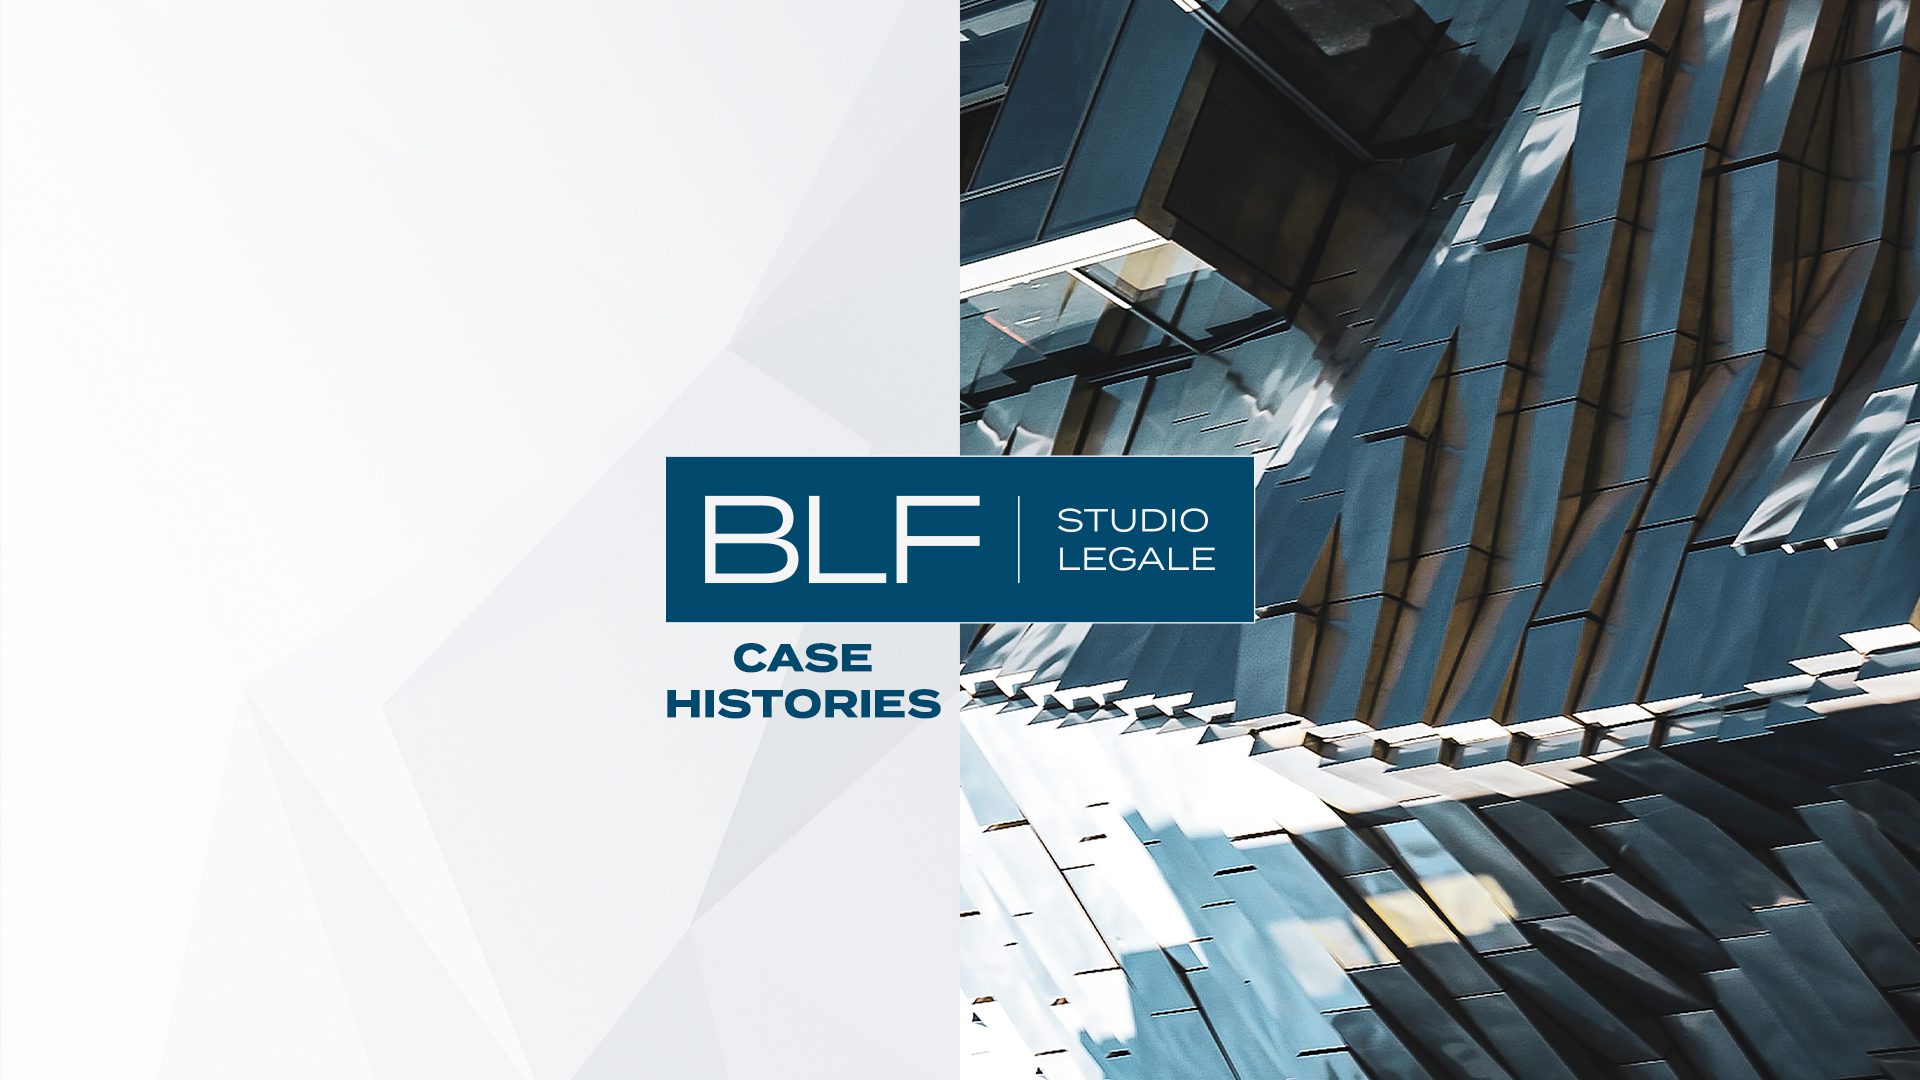 BLF Studio Legale con il Gruppo Mariotti nell’acquisto di un ramo d’azienda dal Gruppo Outokumpu